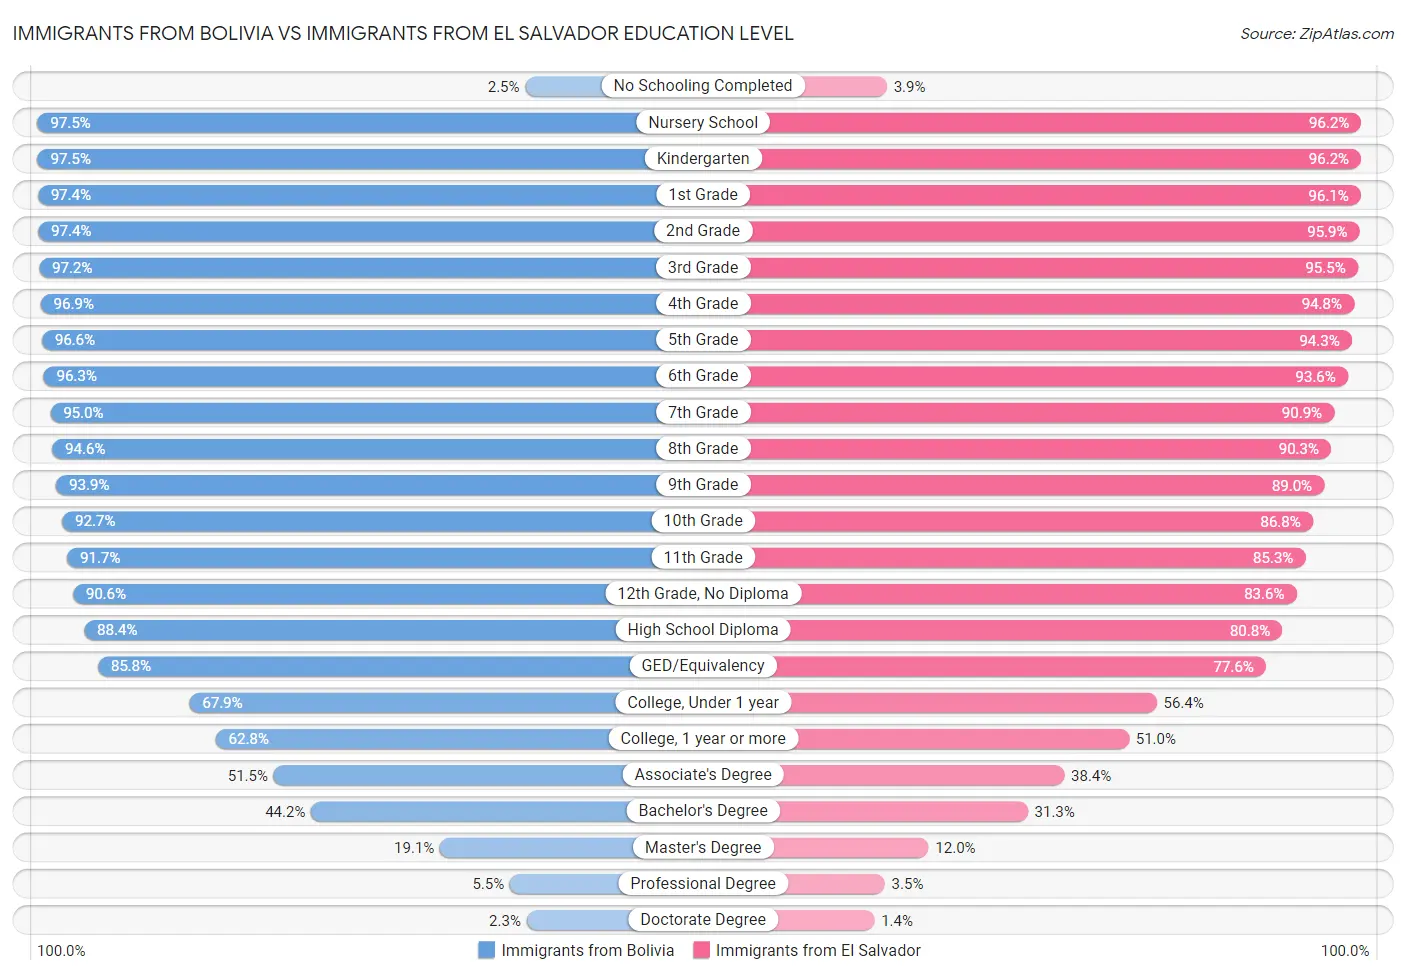 Immigrants from Bolivia vs Immigrants from El Salvador Education Level